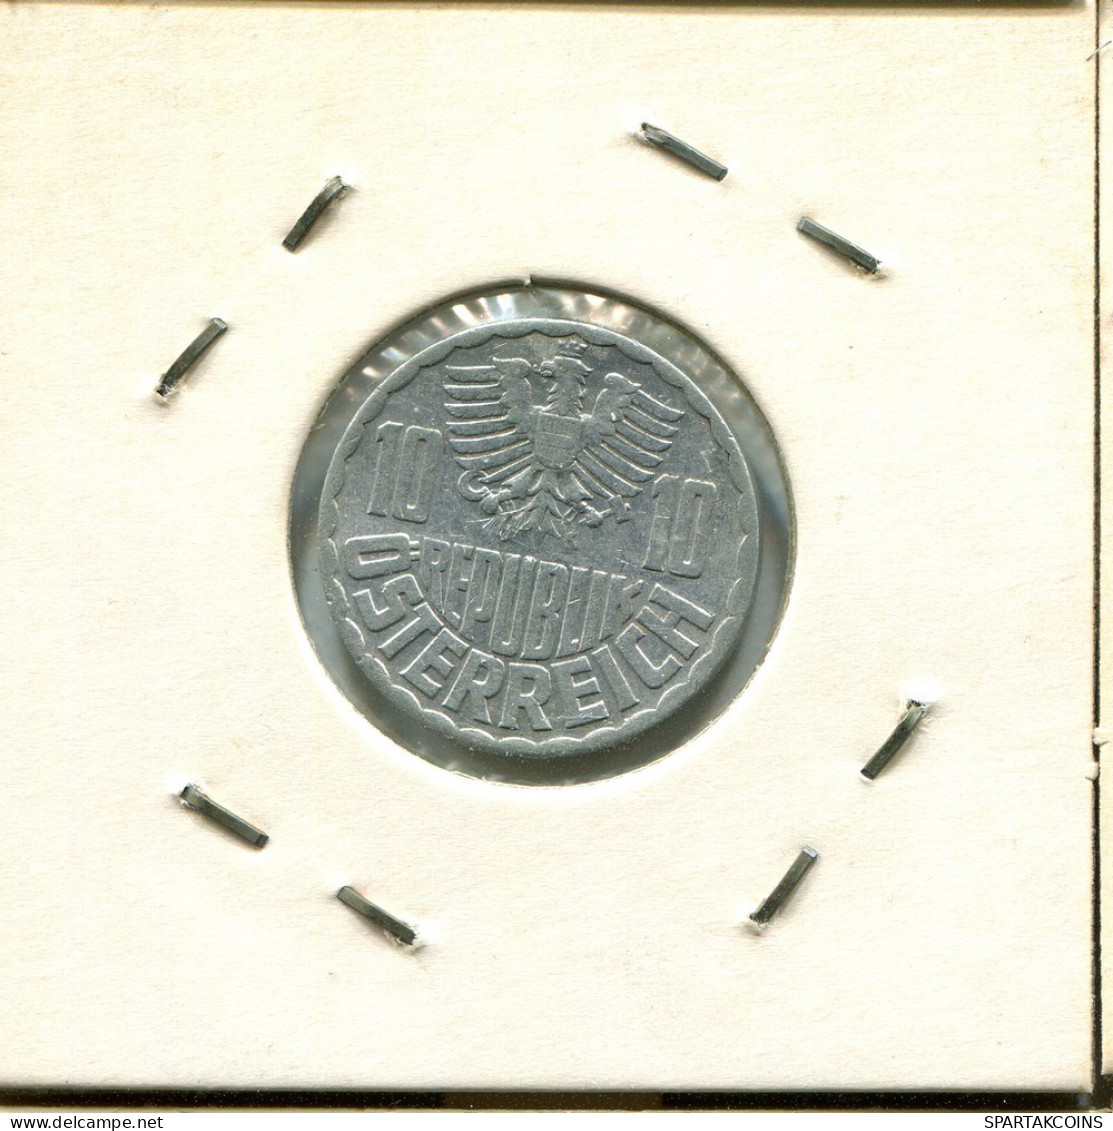 10 GROSCHEN 1957 AUSTRIA Moneda #AT539.E.A - Austria